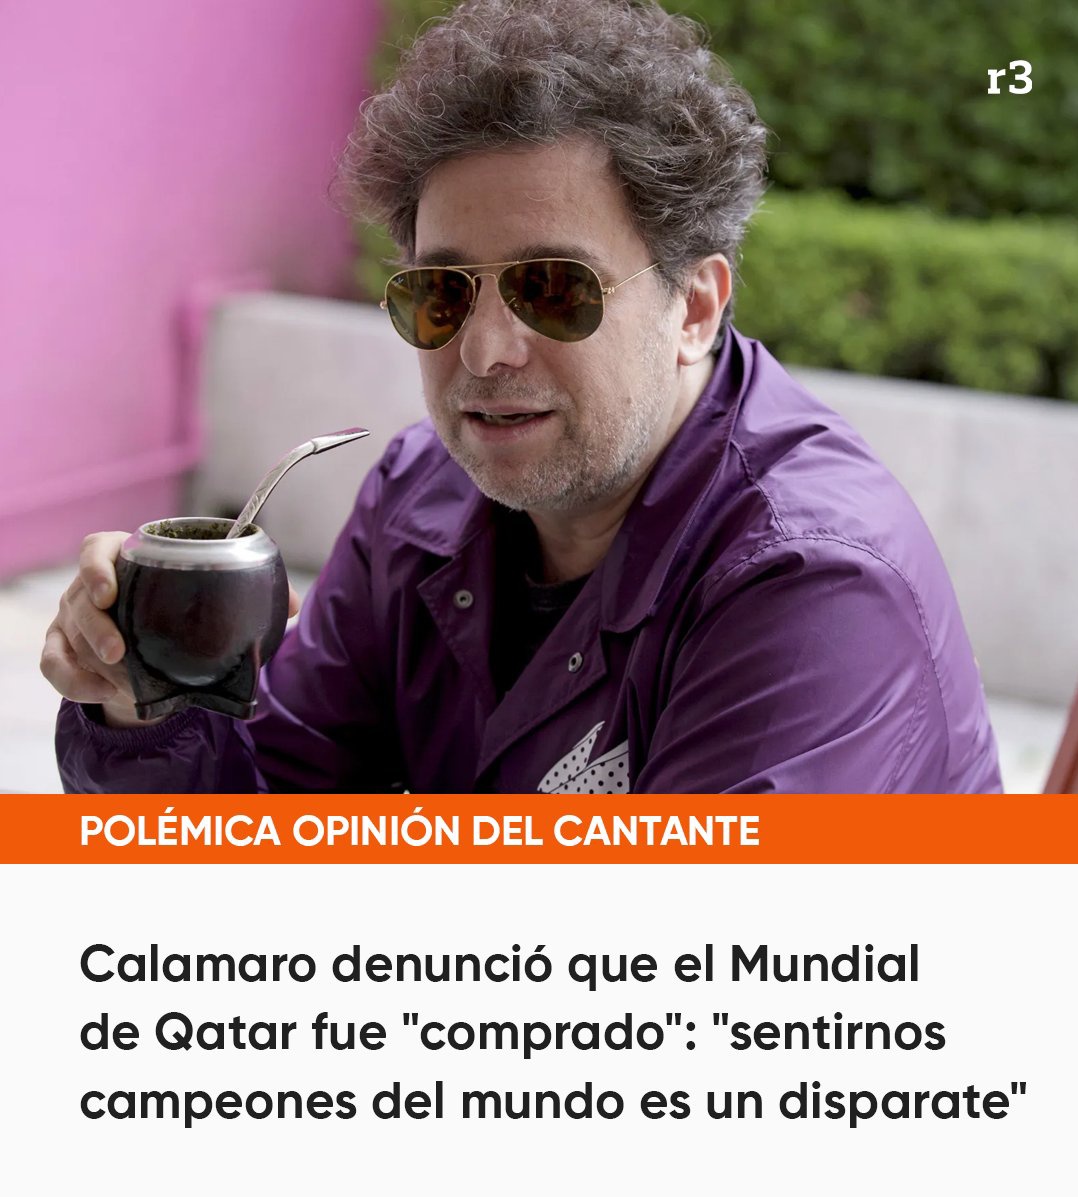 مونديال قطر 'تم شراؤه' 
'الشعور وكأننا أبطال العالم هو هراء' 

أندريس كالامارو - موسيقي أرجنتيني مشهور